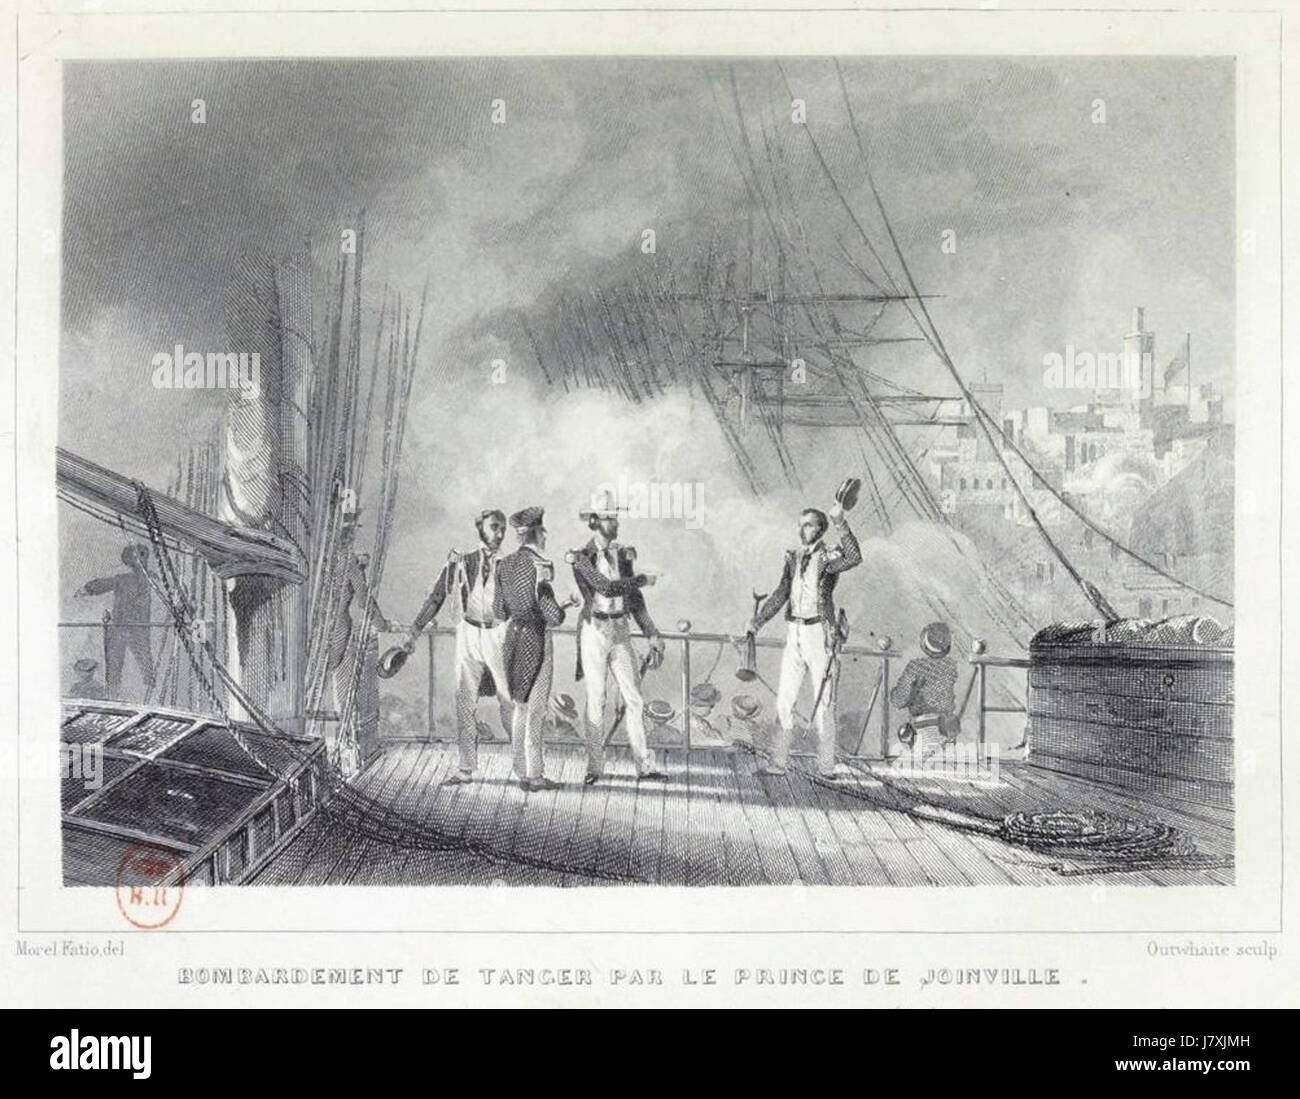 Bombardement de Tanger par le prince de Joinville en 1844 Stock Photo